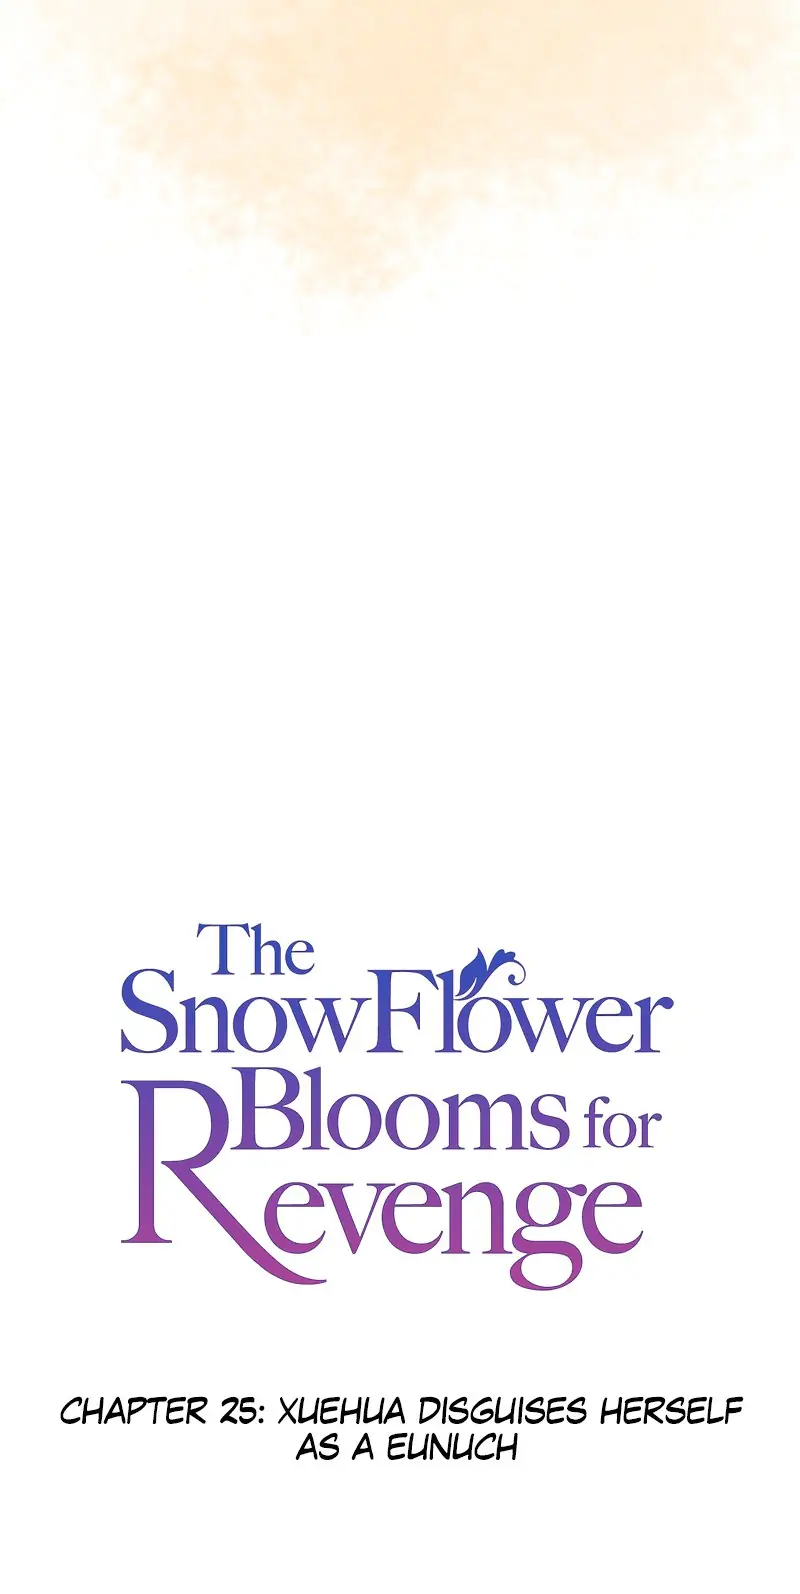 The Snowflower Blooms for Revenge chapter 25